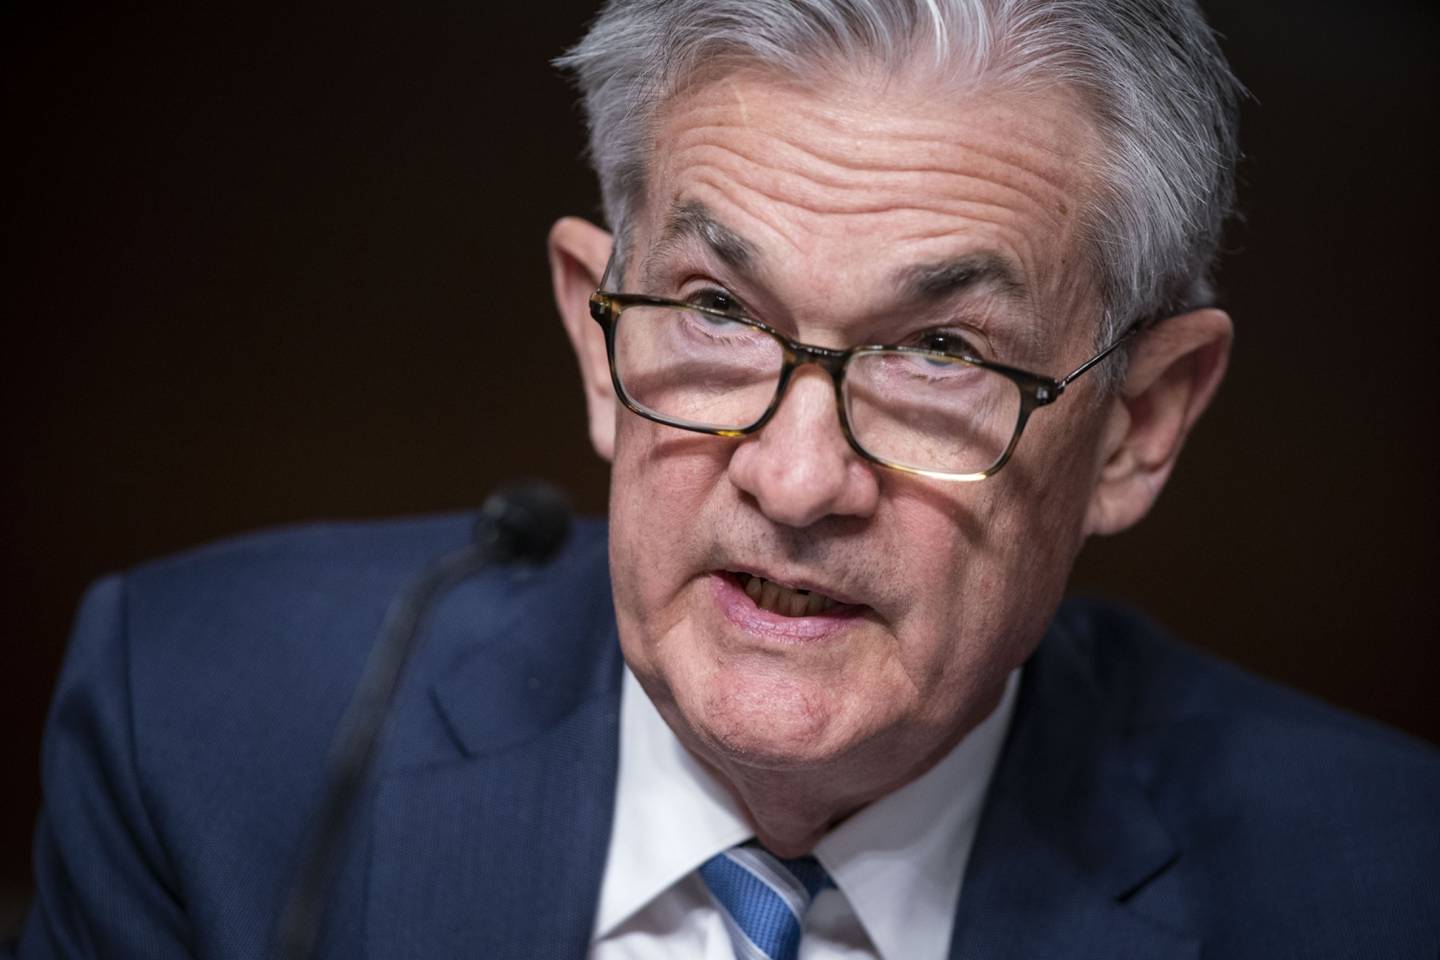 Powell disse que a reação nos mercados financeiros mostrou que os investidores estavam entendendo a mensagem do Fed